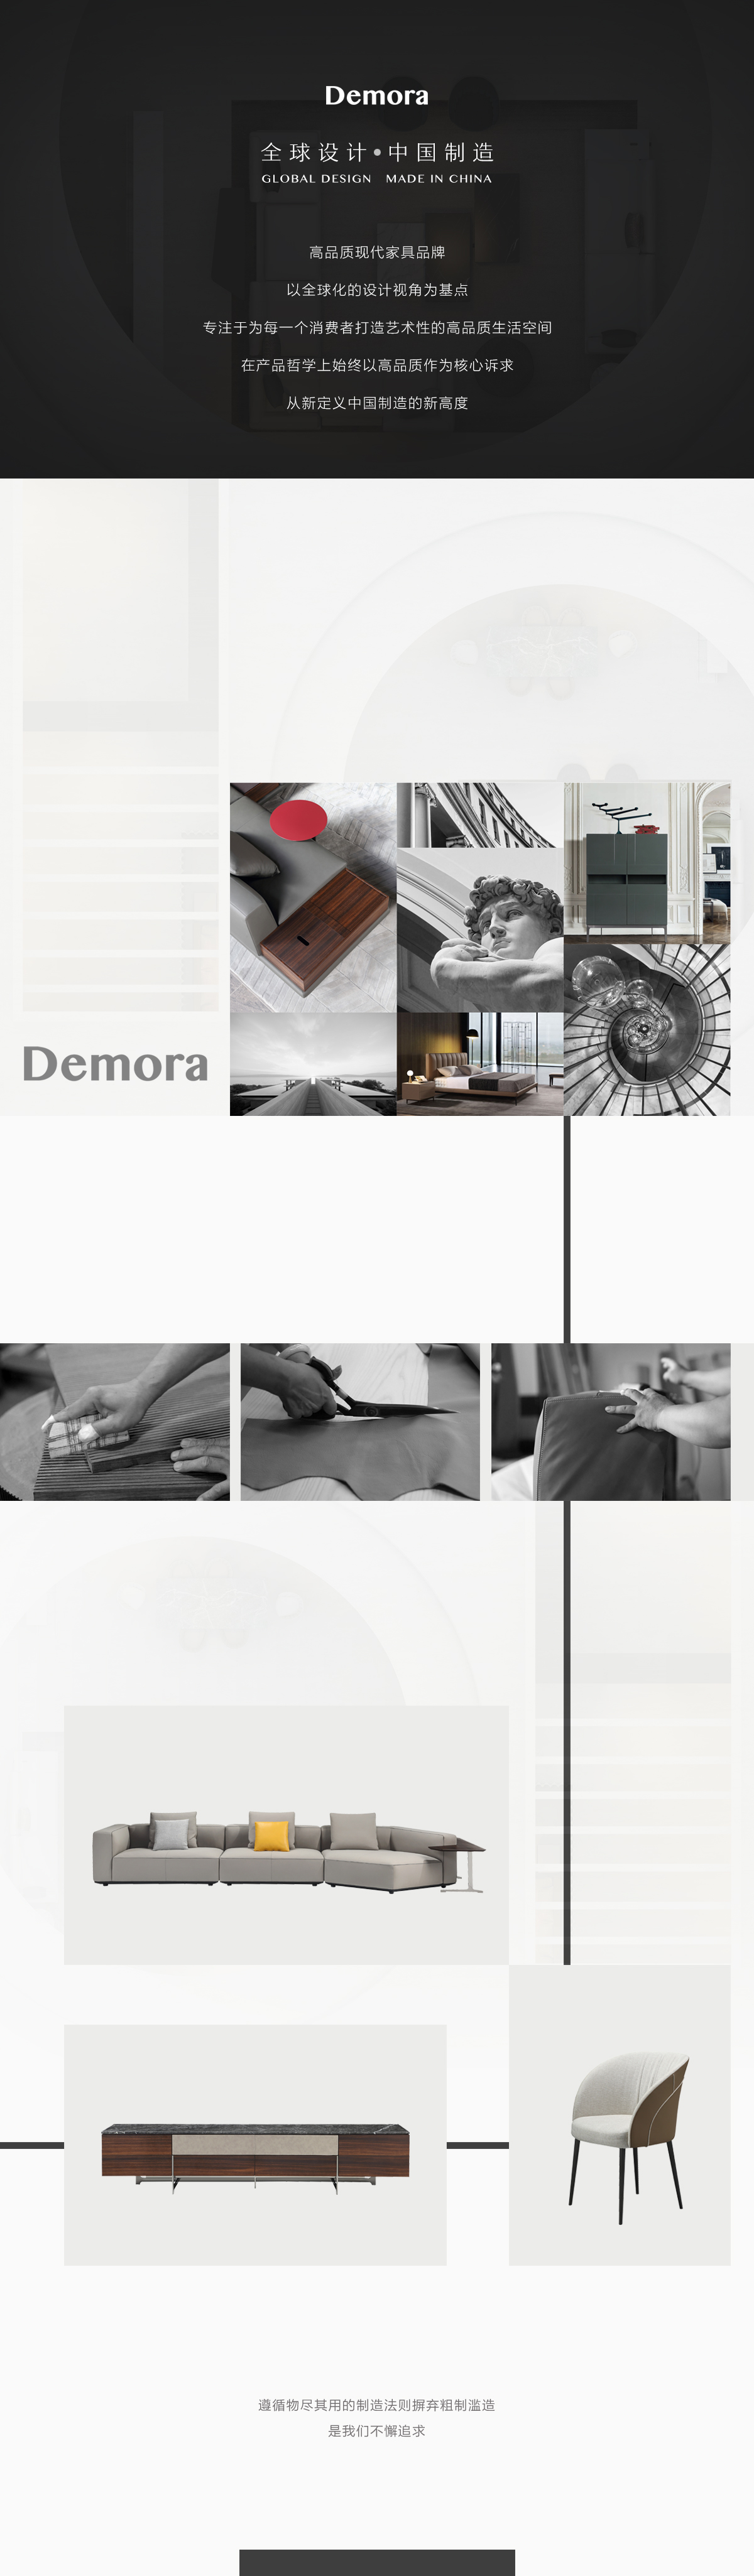 品牌页-Demora.jpg